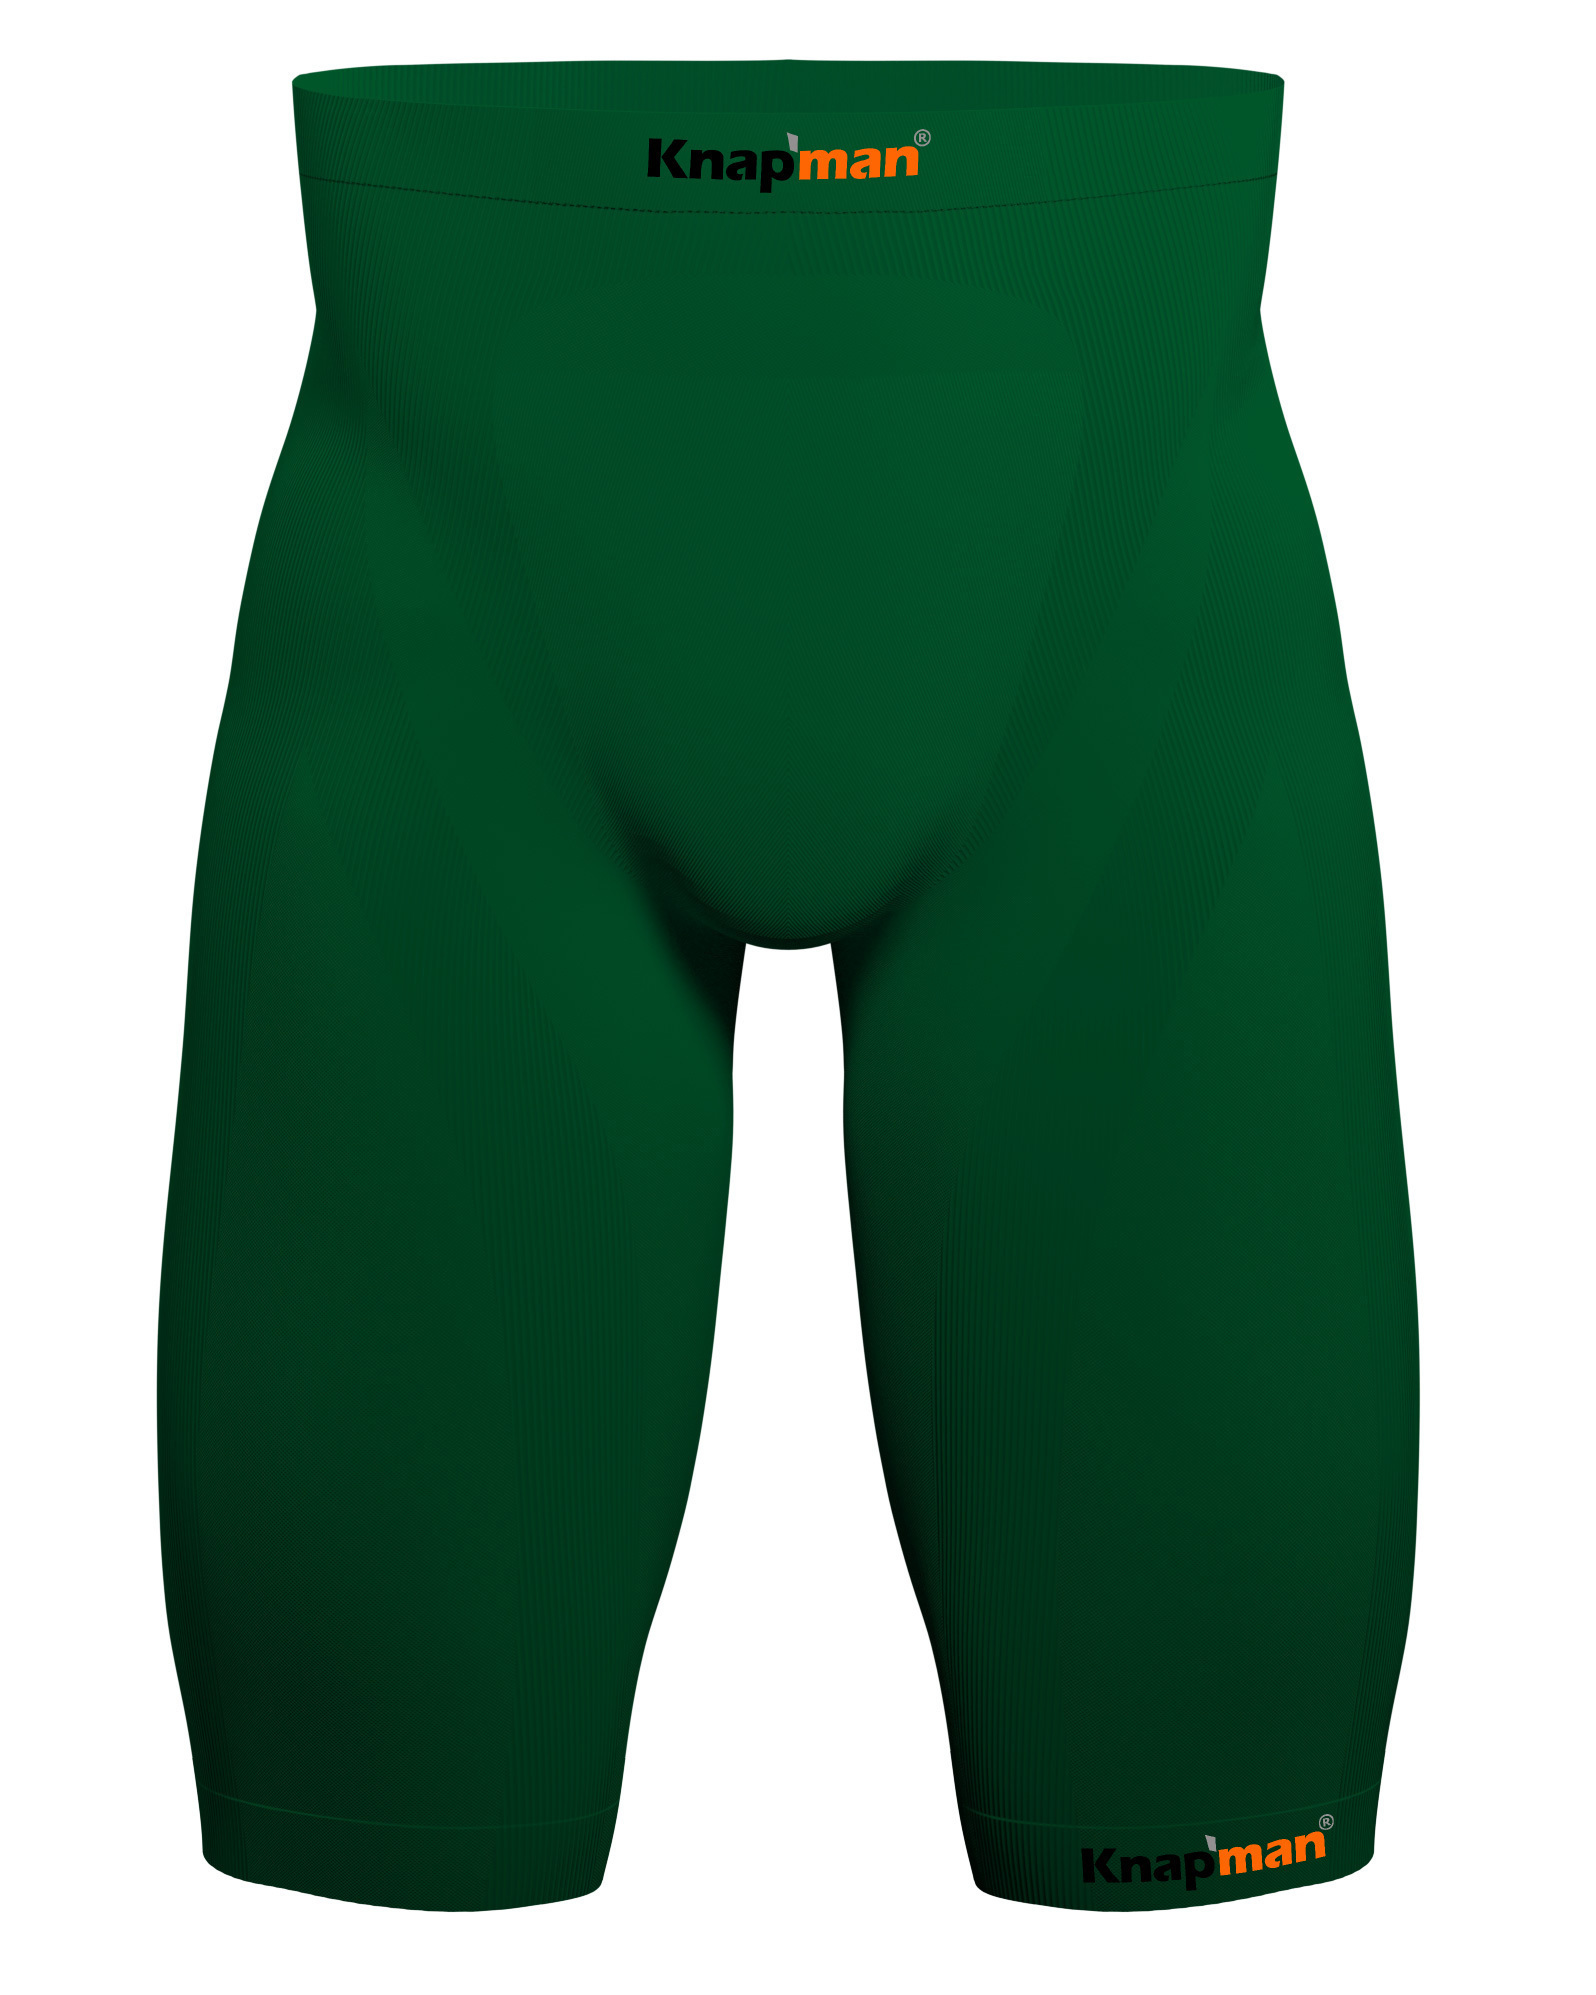 Knapman Mens Compression Shorts 45% green